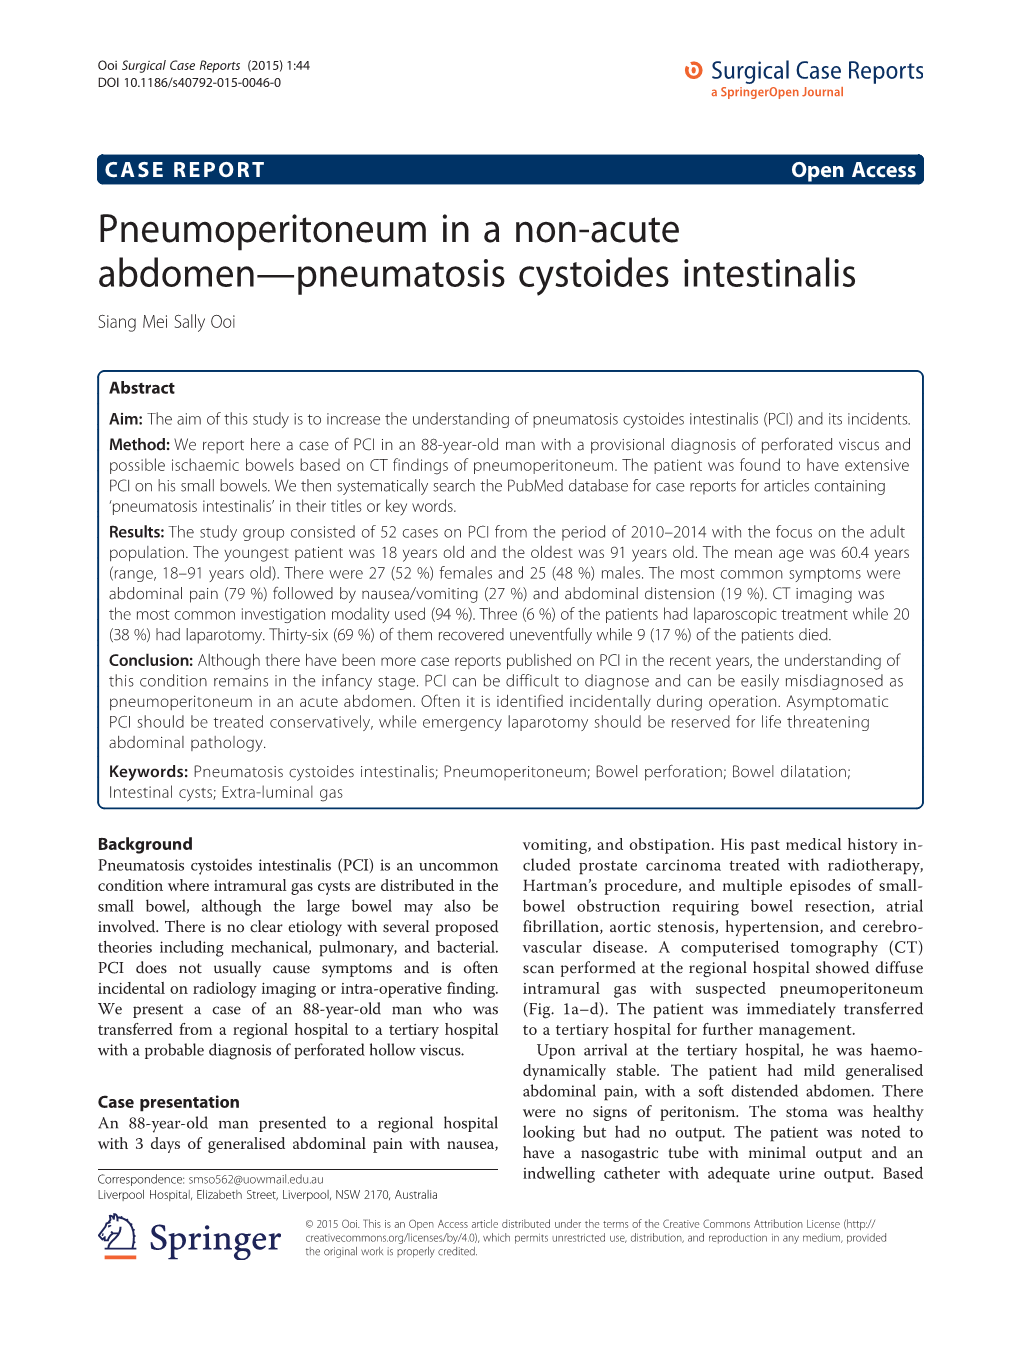 Pneumoperitoneum in a Non-Acute Abdomen—Pneumatosis Cystoides Intestinalis Siang Mei Sally Ooi